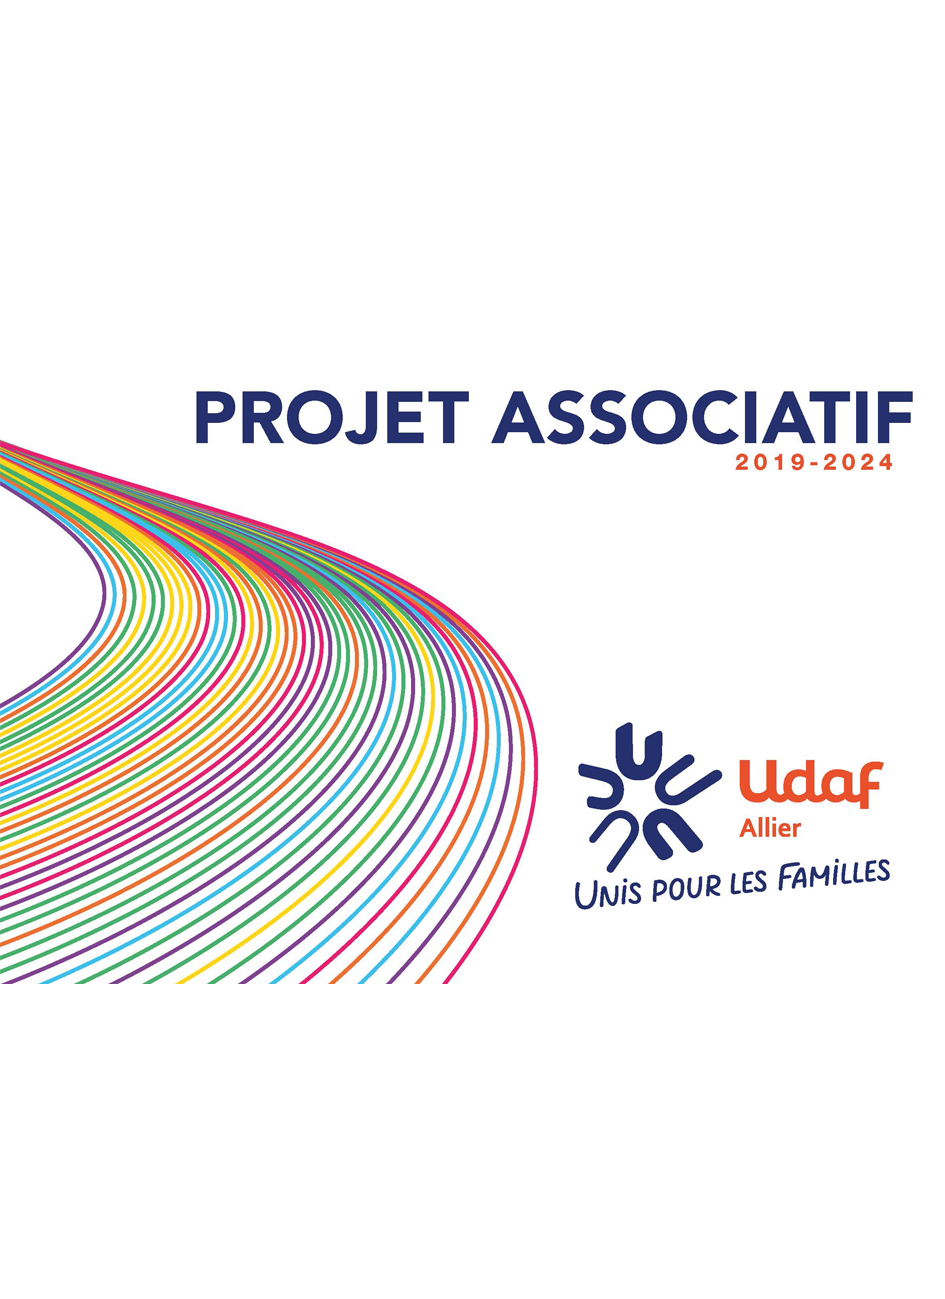 projet associatif 2019 2024 udaf 03